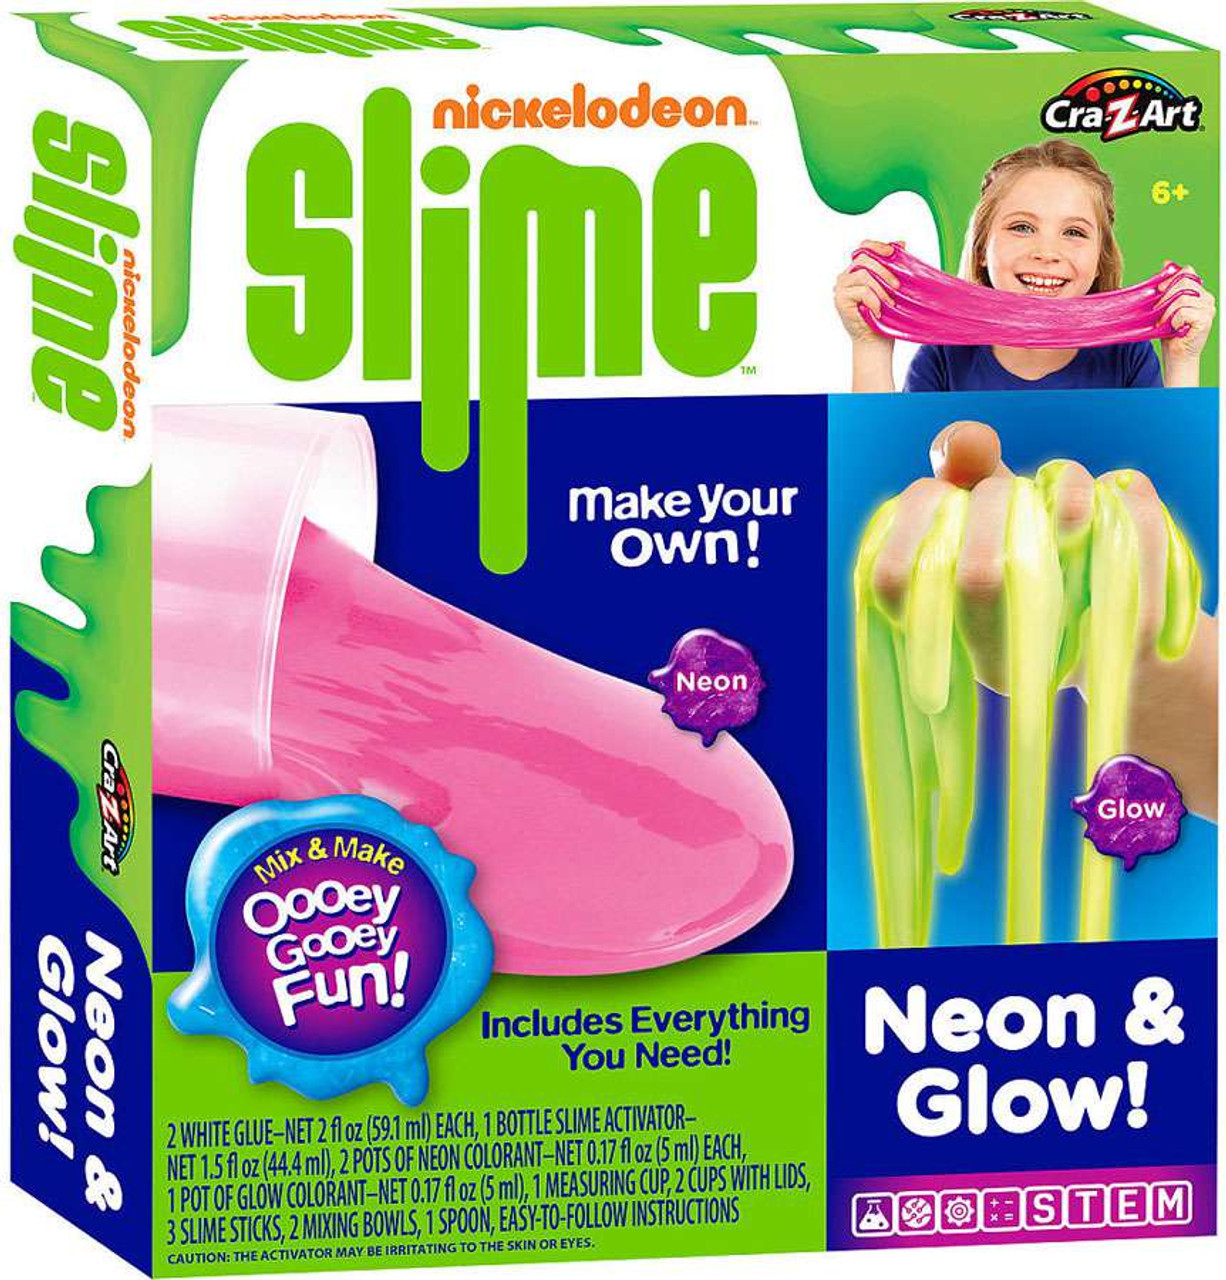 cra z art slime kit instructions